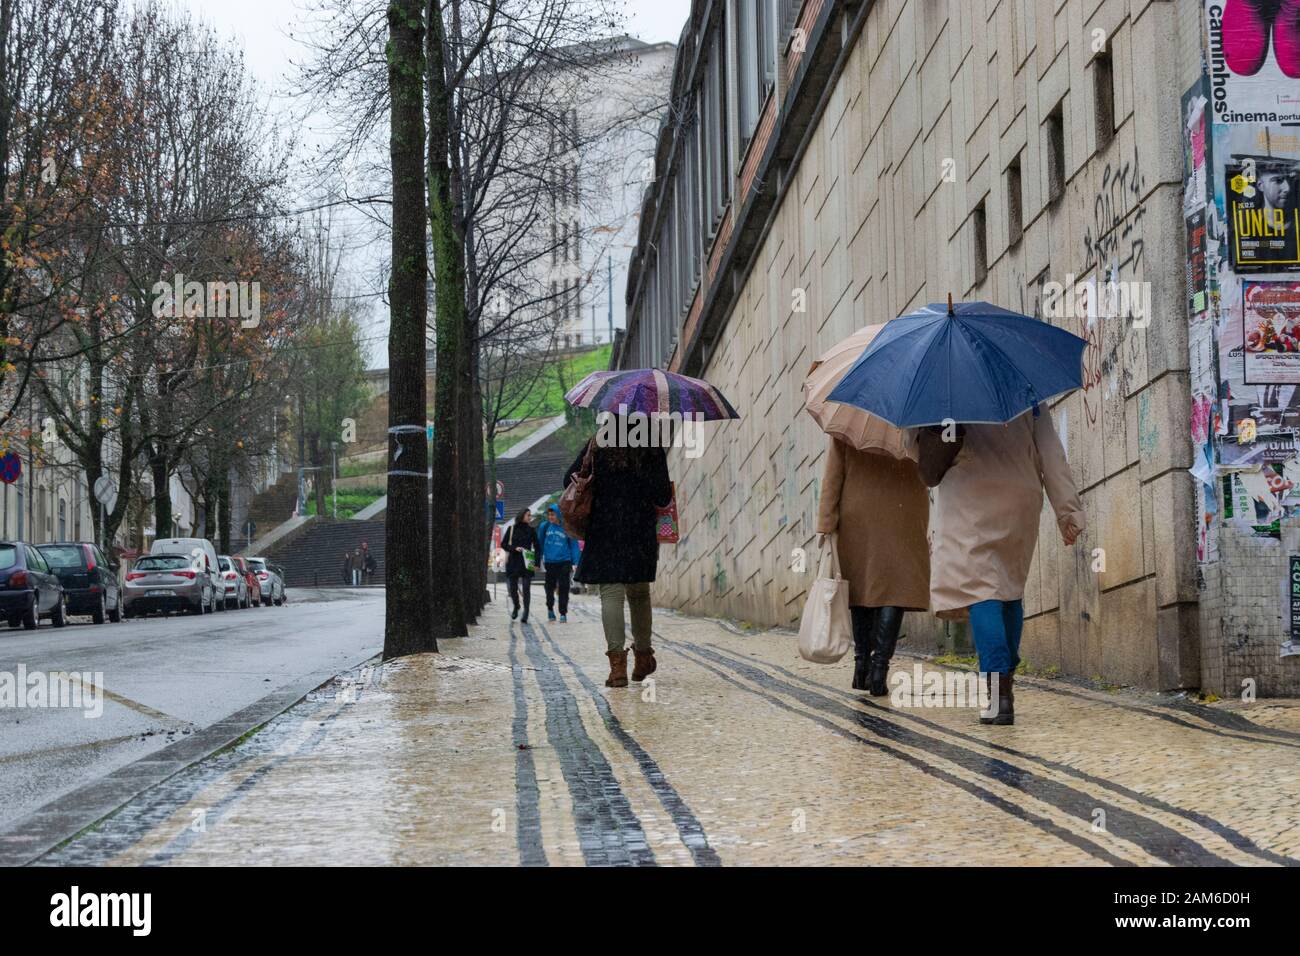 COIMBRA, PORTUGAL - 04 janvier 2016 - les gens essaient de rester au sec pendant les fortes pluies dans le Praca da Republica dans le centre de Coimbra Portugal Banque D'Images